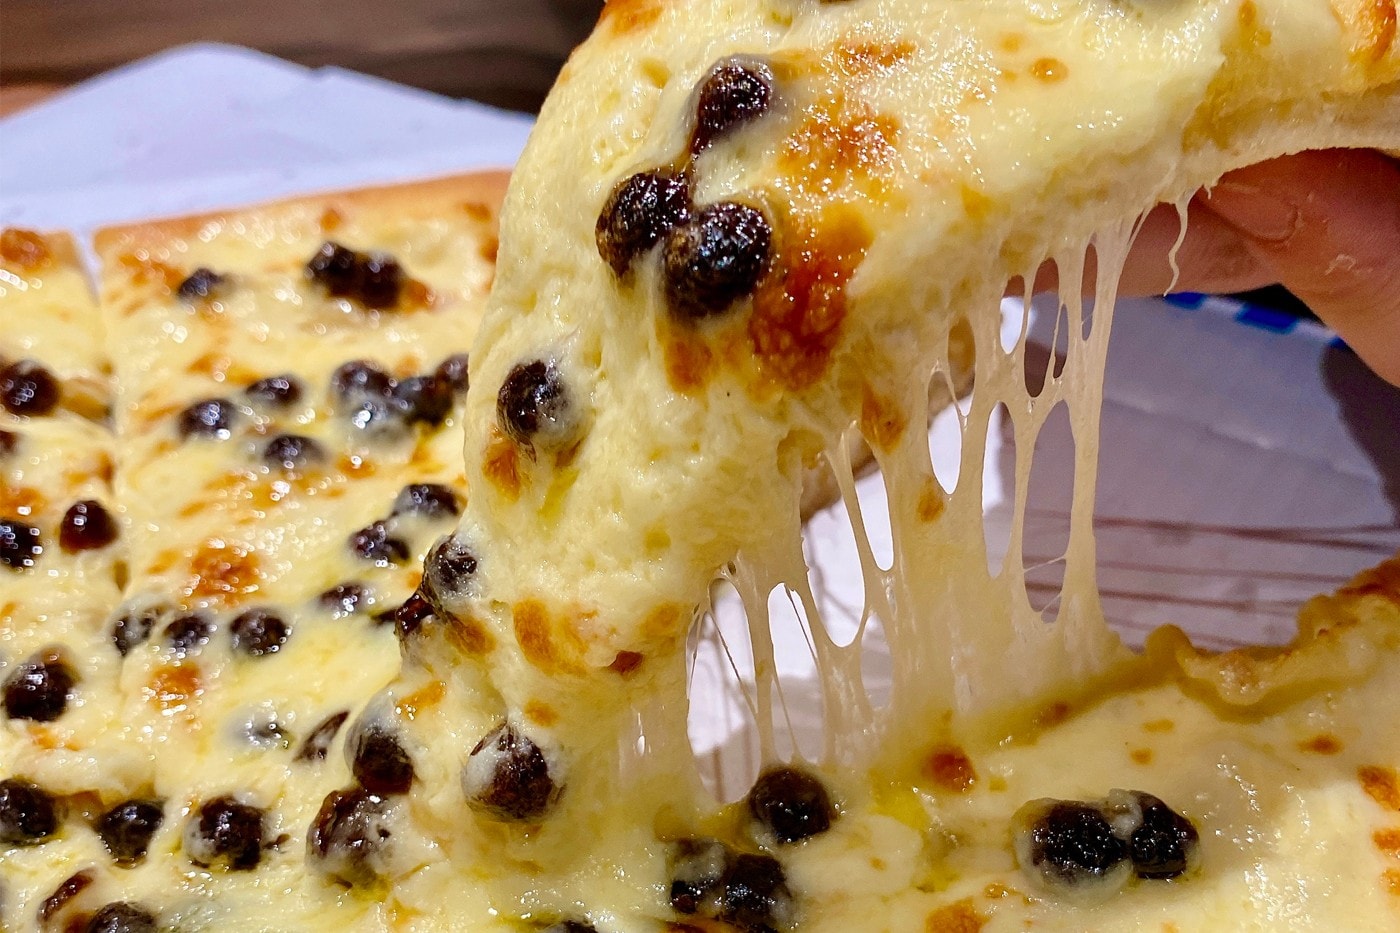 日本 Domino's Pizza 正式推出全新「黑糖珍珠」口味披薩